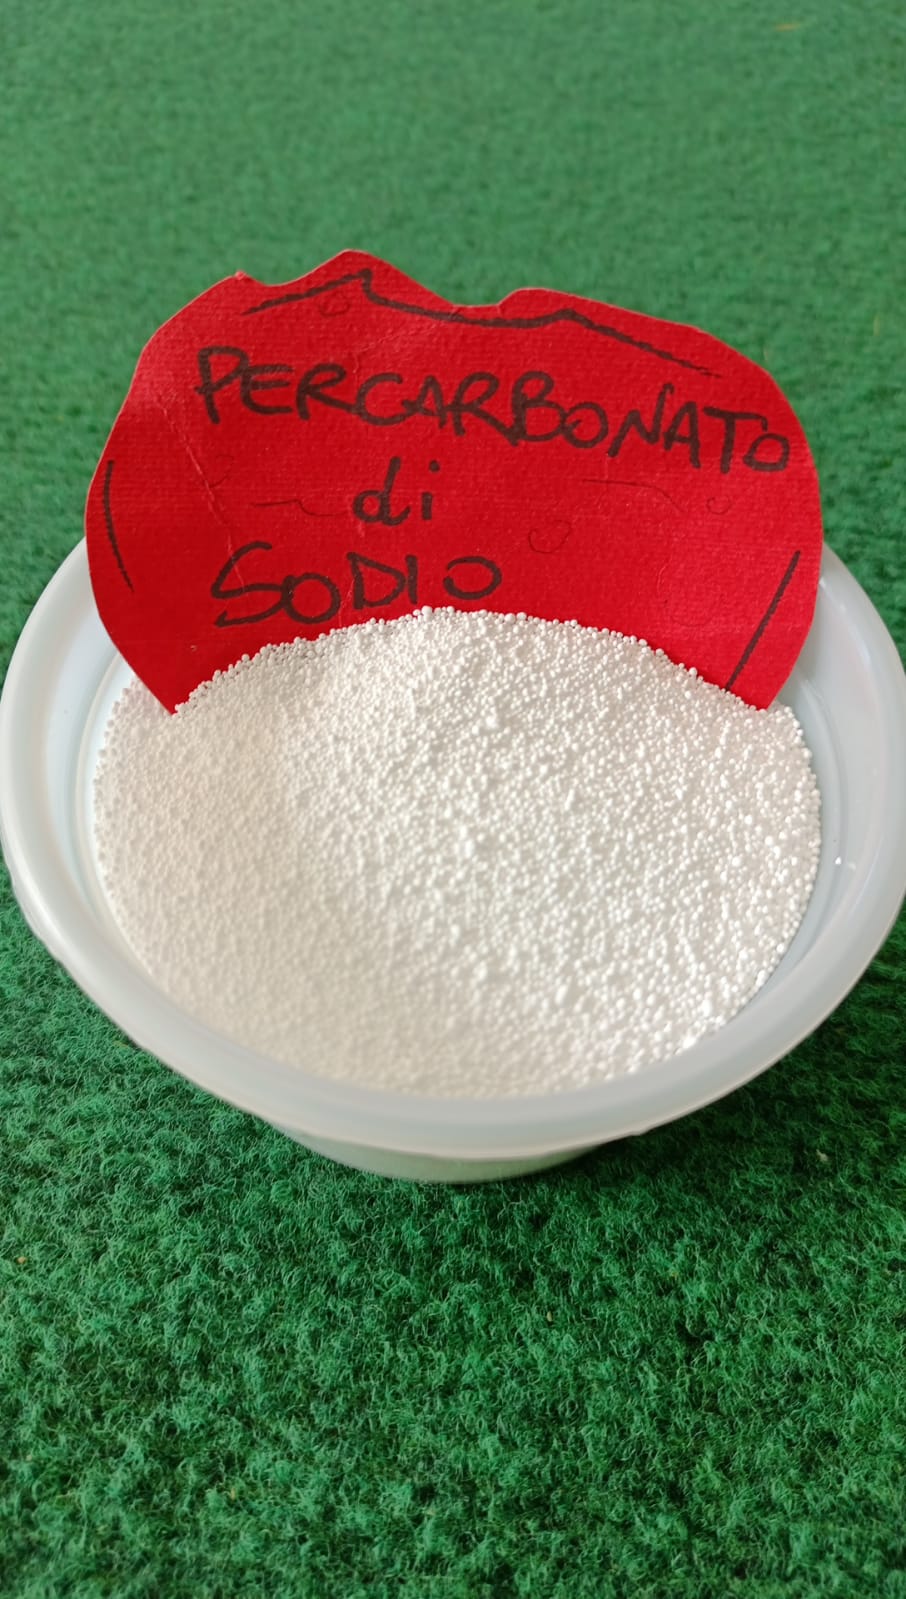 percarbonato di sodio puro € 3,80 kg